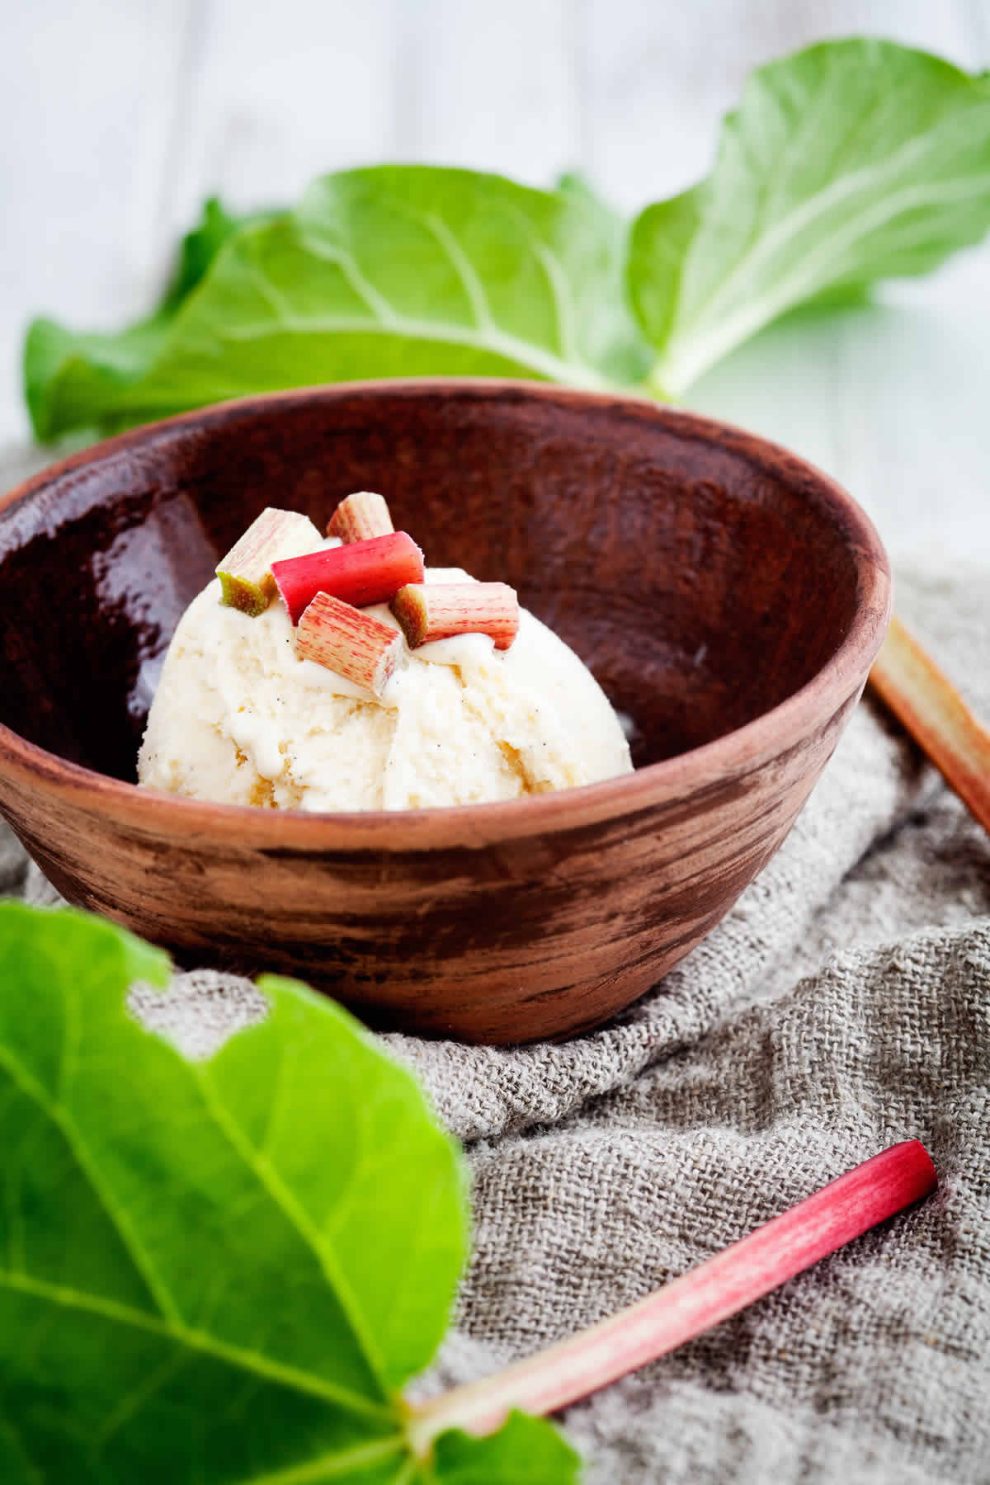 Crème glacée à la rhubarbe au Thermomix : Une recette délicieusement simple pour l'été !